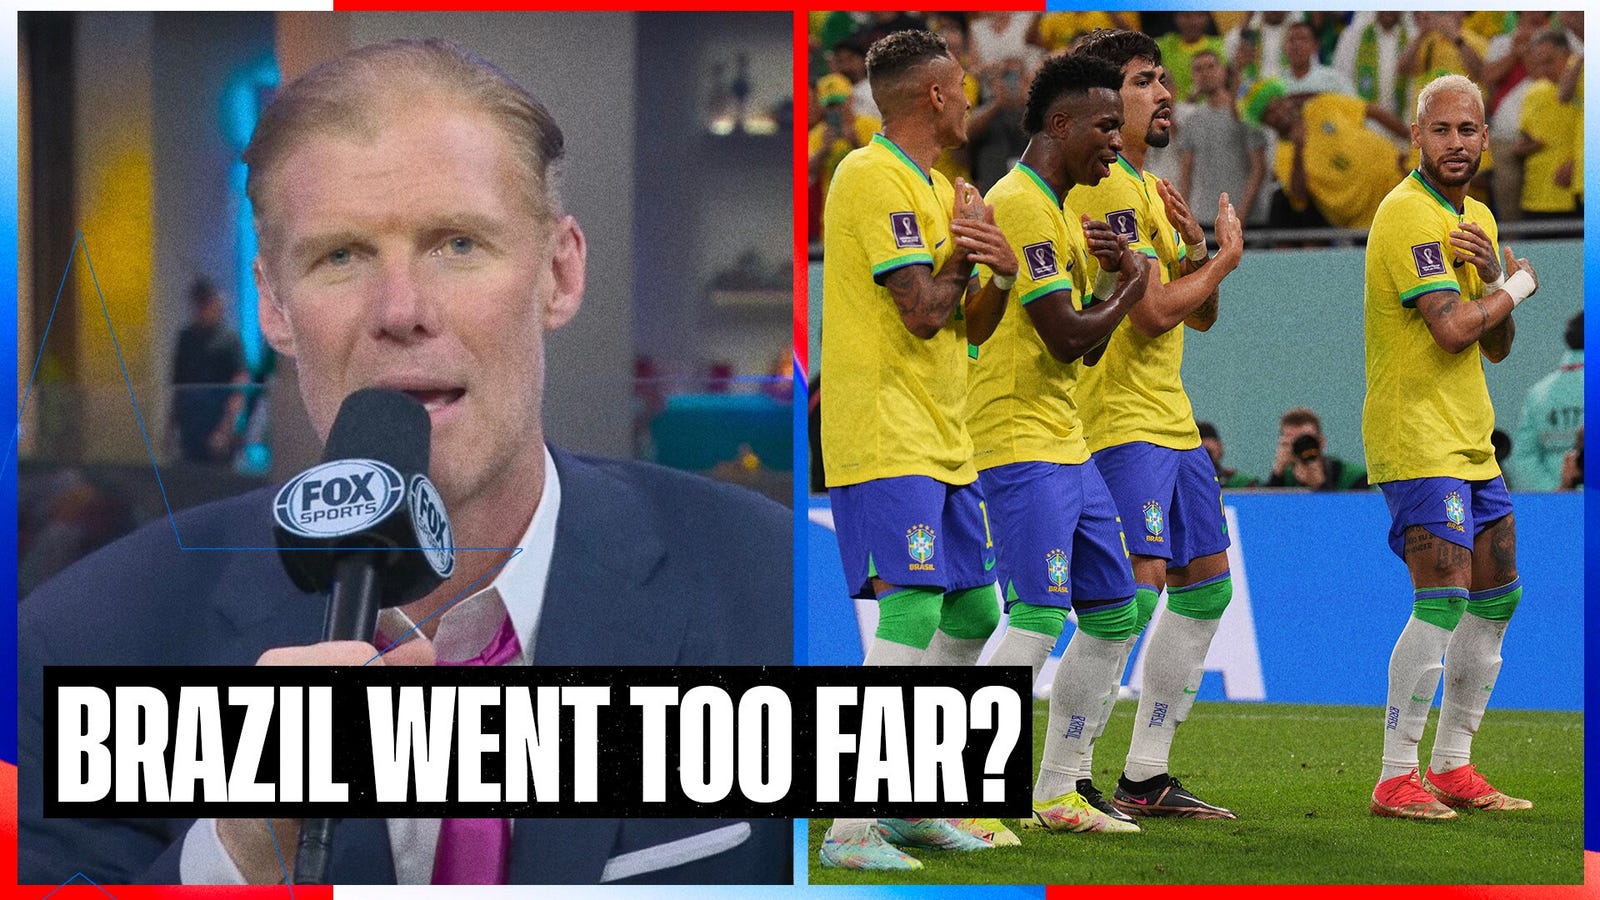 Were Brazil's celebrations disrespectful?